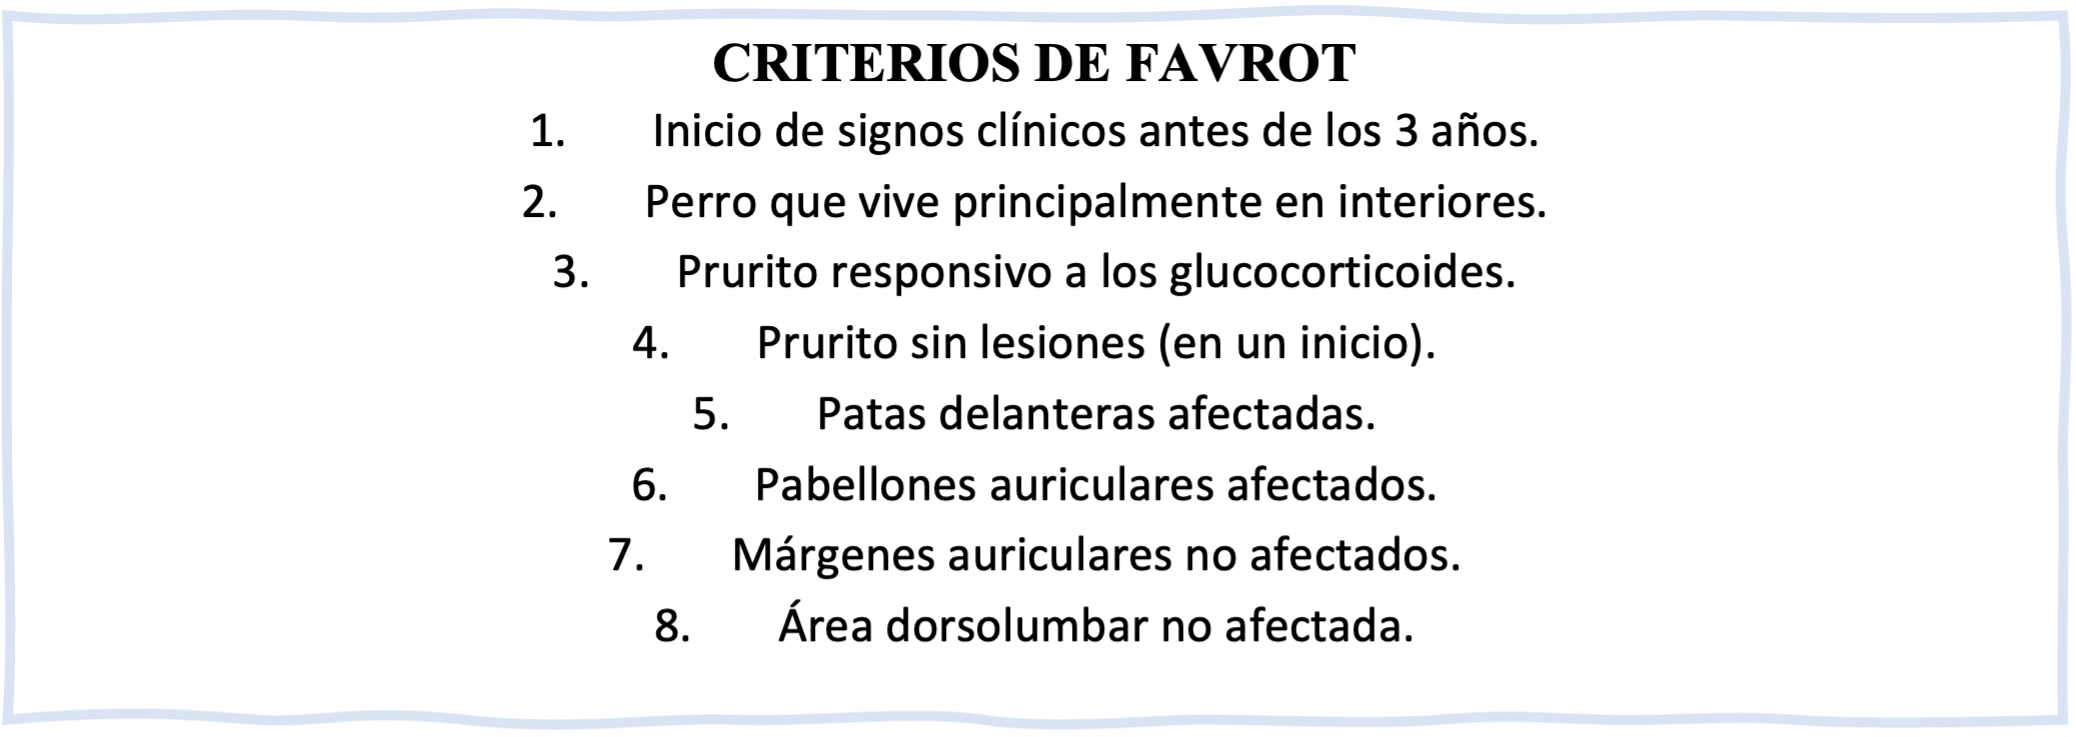 Criterios de Favrot